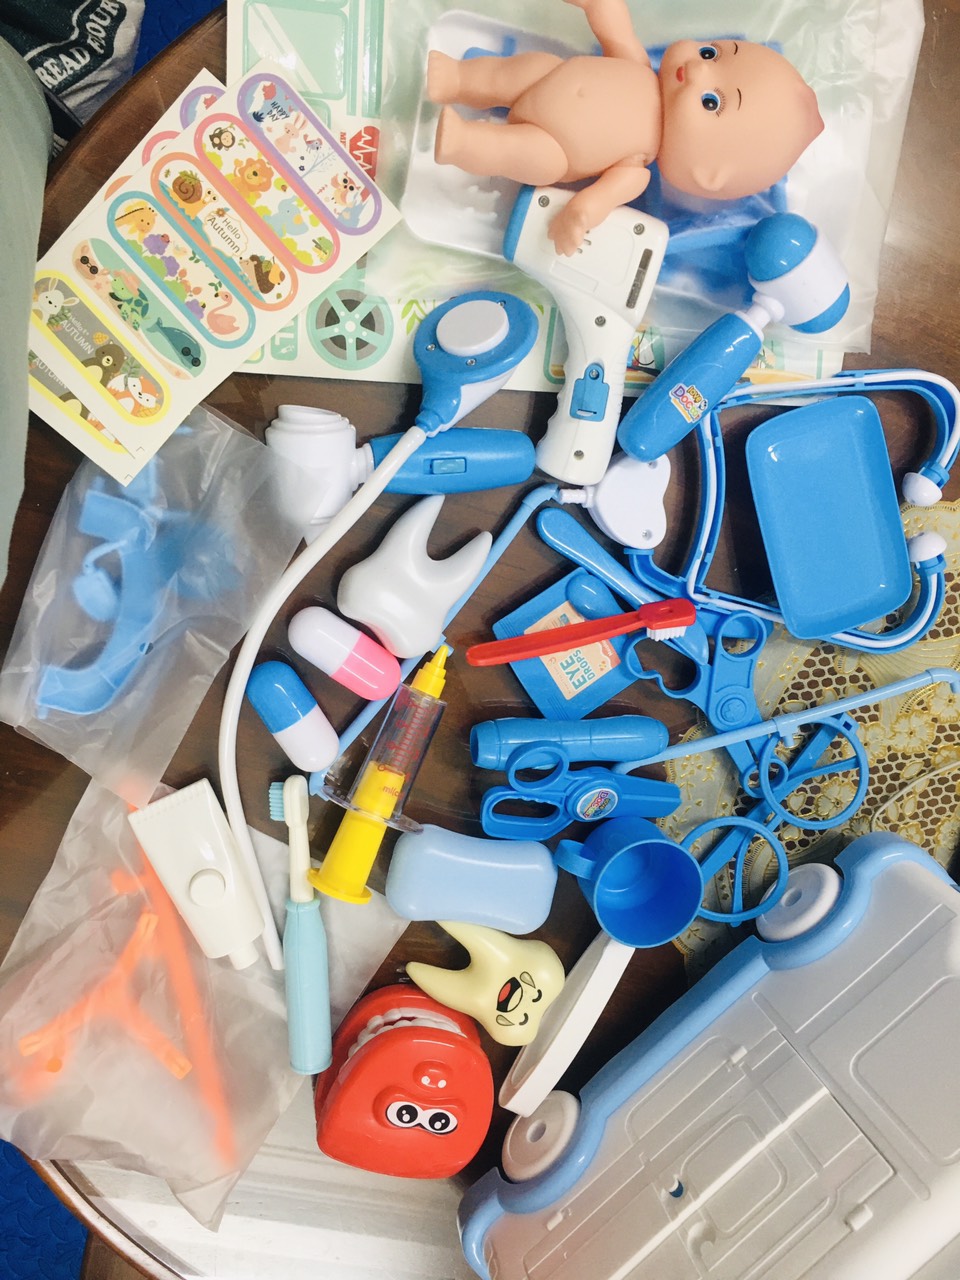 Ô tô đồ chơi bác sĩ xe cứu thương cho bé gái trai đóng y tá khám bệnh phiên bản nâng cấp có đèn nhạc, quà tặng sinh nhật